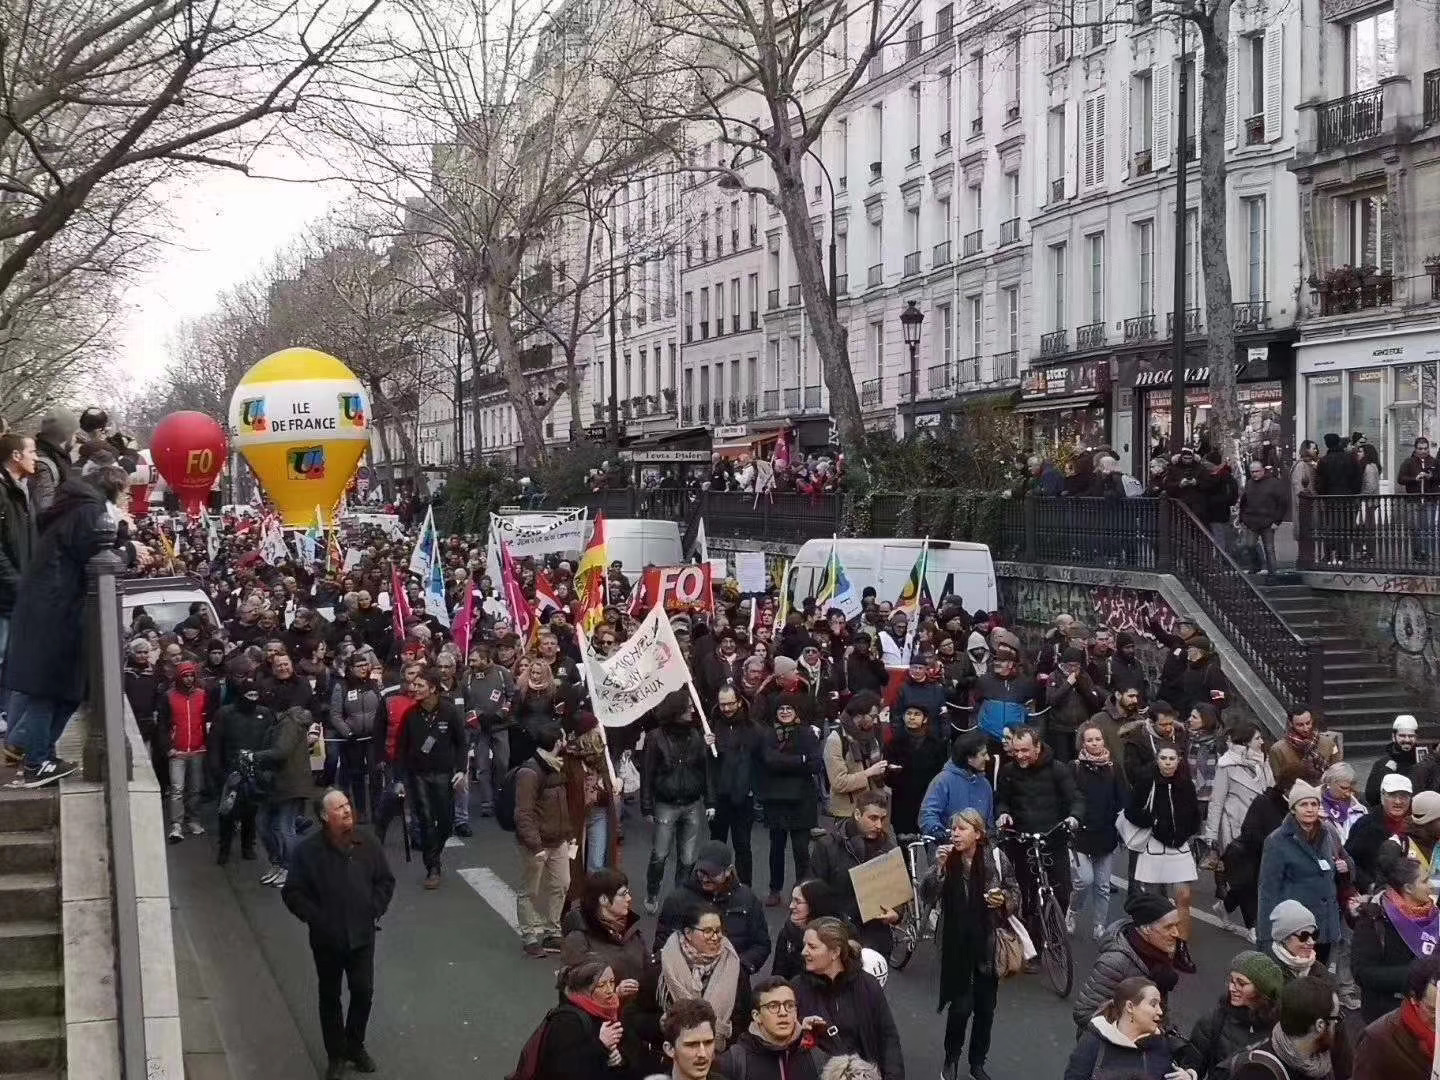 法国反对养老退休制度改革抗议活动已有61.5万至180万人参加 - 2019年12月18日, 俄罗斯卫星通讯社